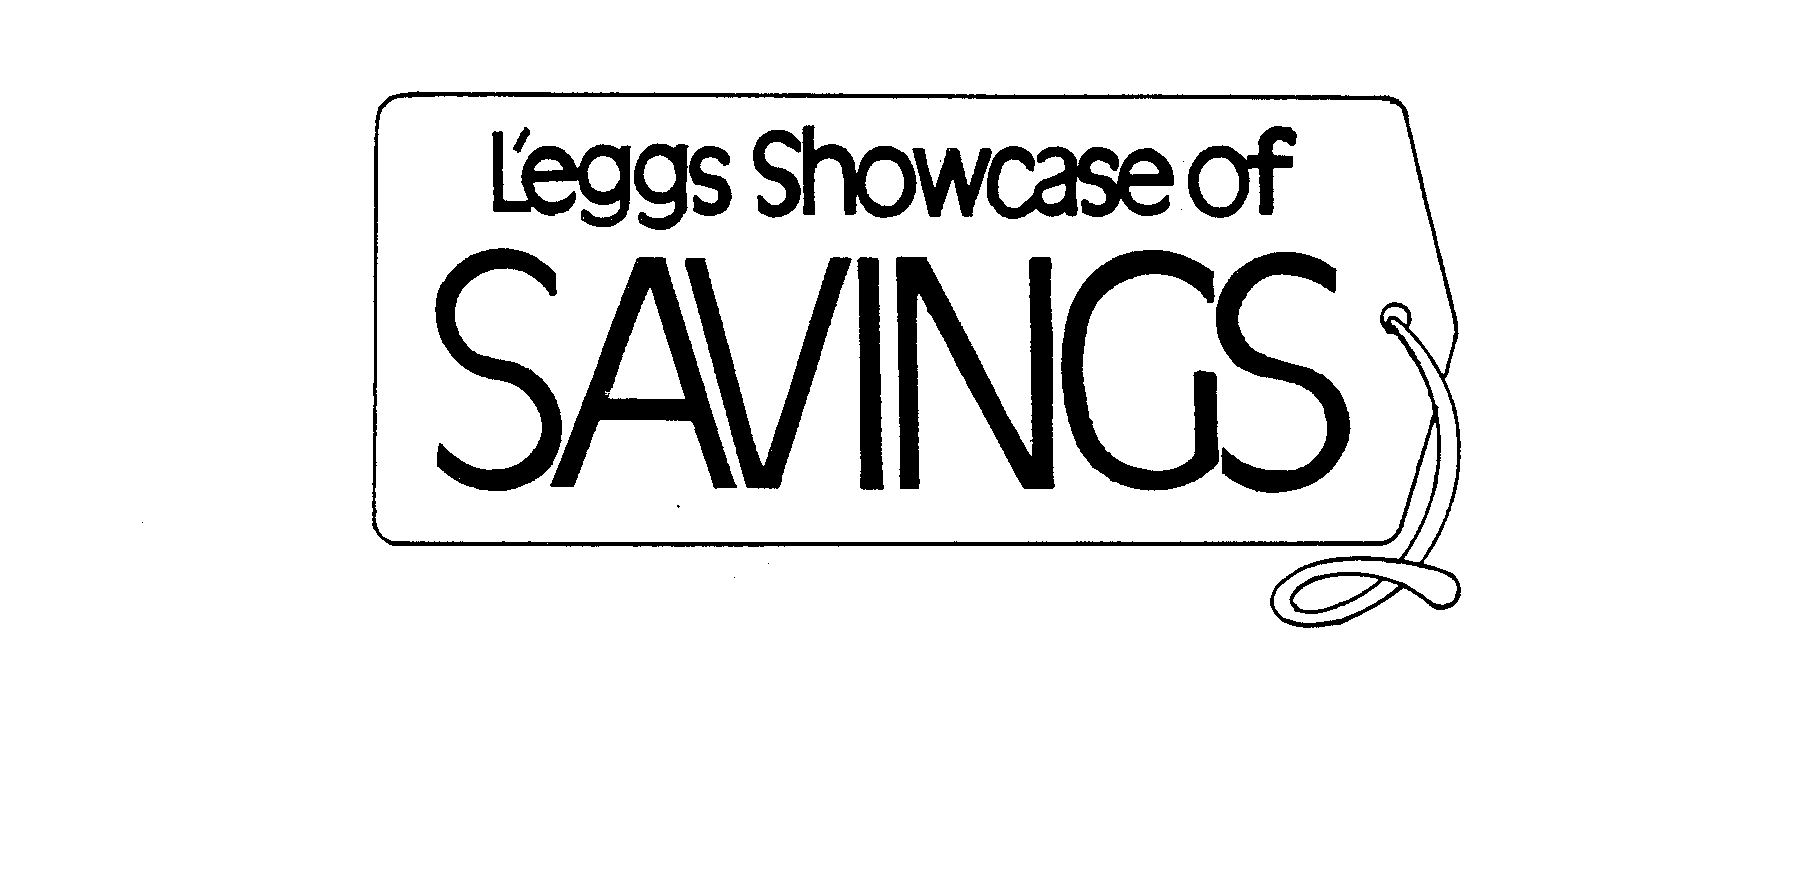  L'EGGS SHOWCASE OF SAVINGS